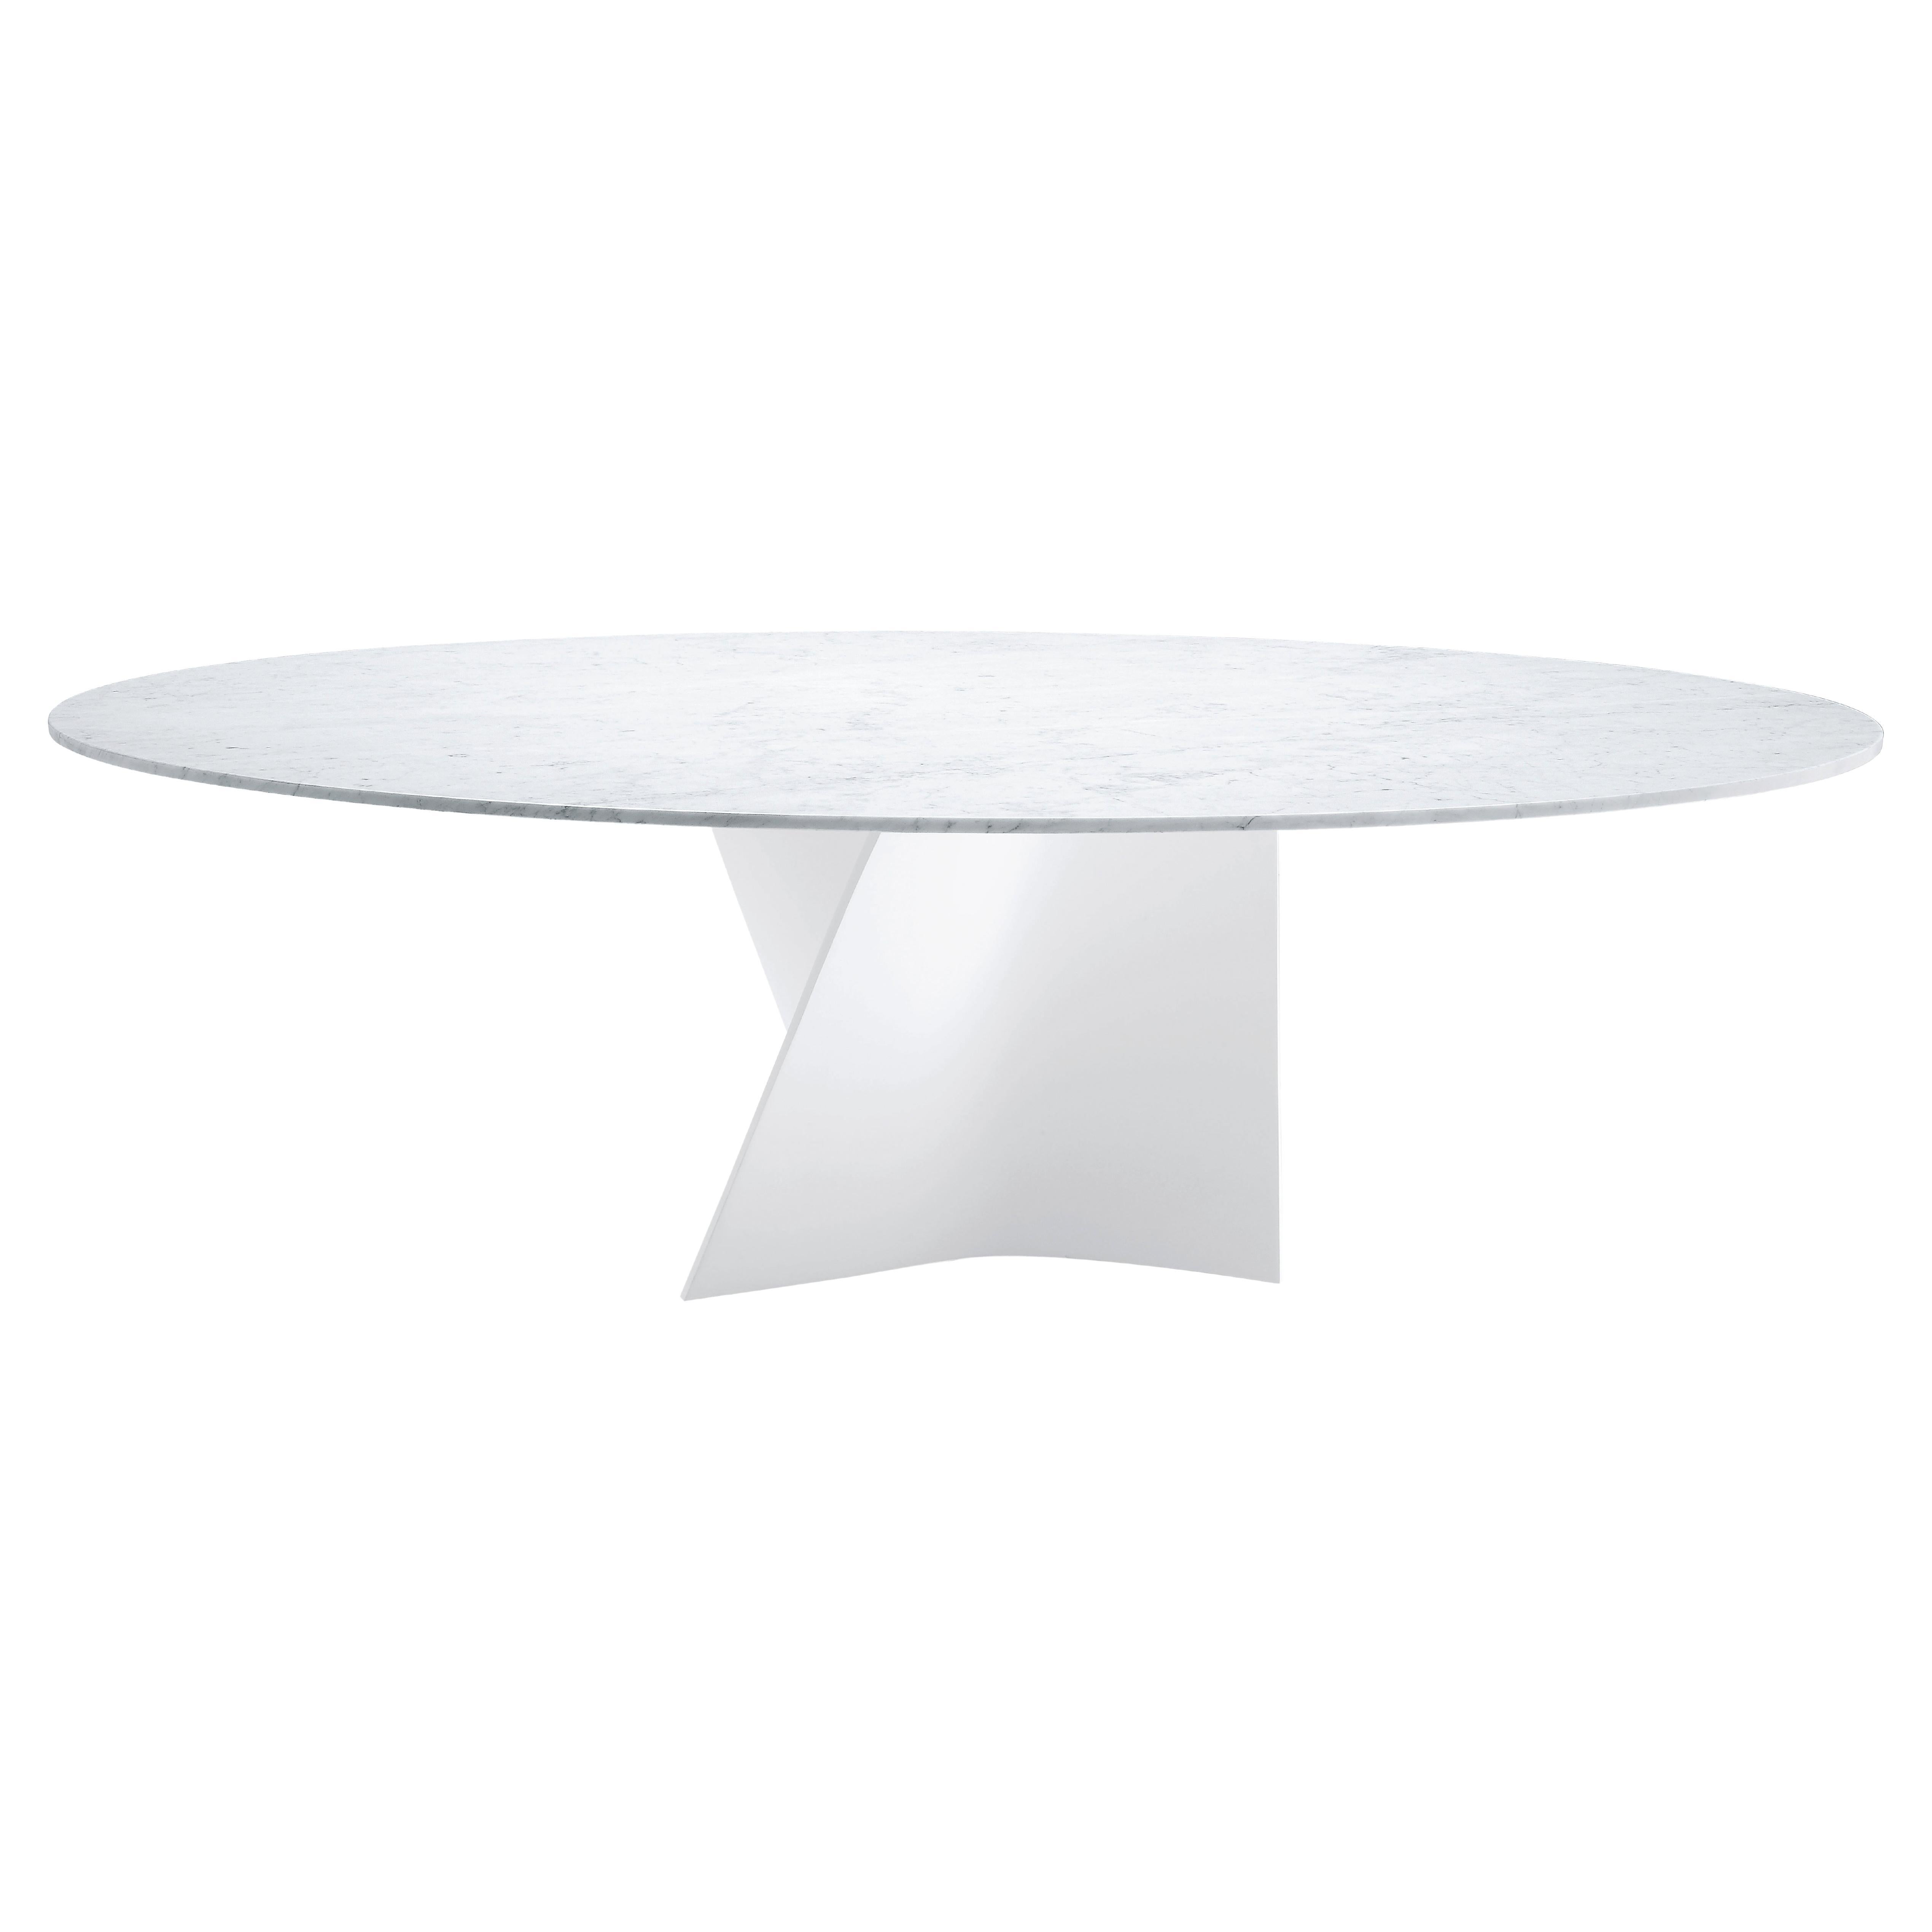 Kleiner Zanotta-Tisch Elica mit Carrara-Marmorplatte und weißem Rahmen von Prospero Rasulo